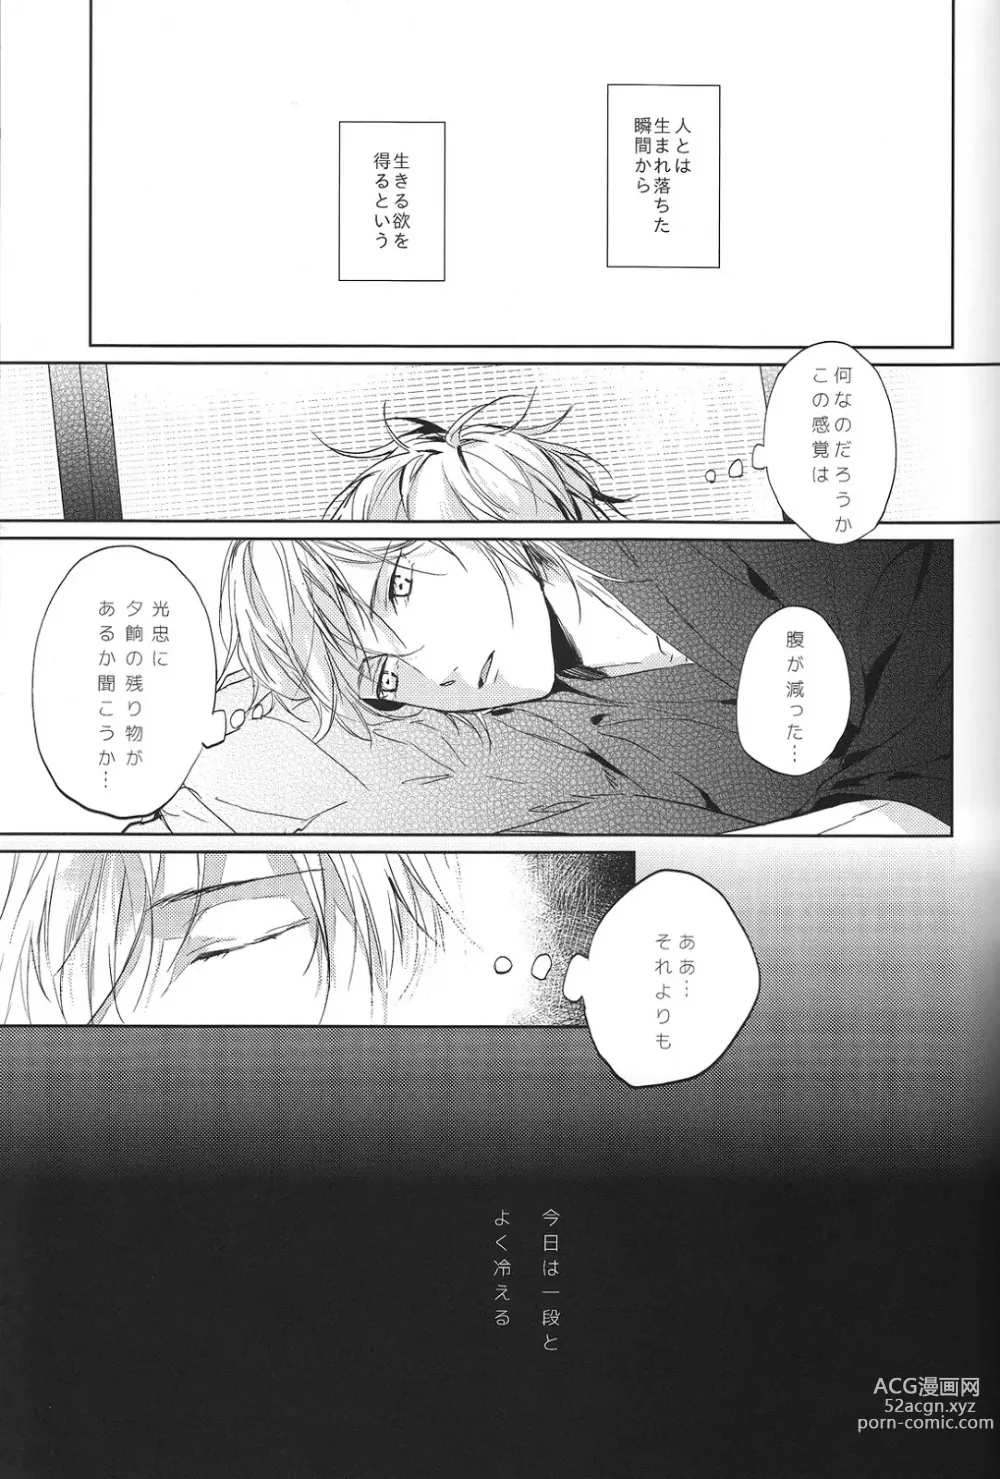 Page 16 of doujinshi Kimi no ude no naka de kogoeru fuyu o sugosou